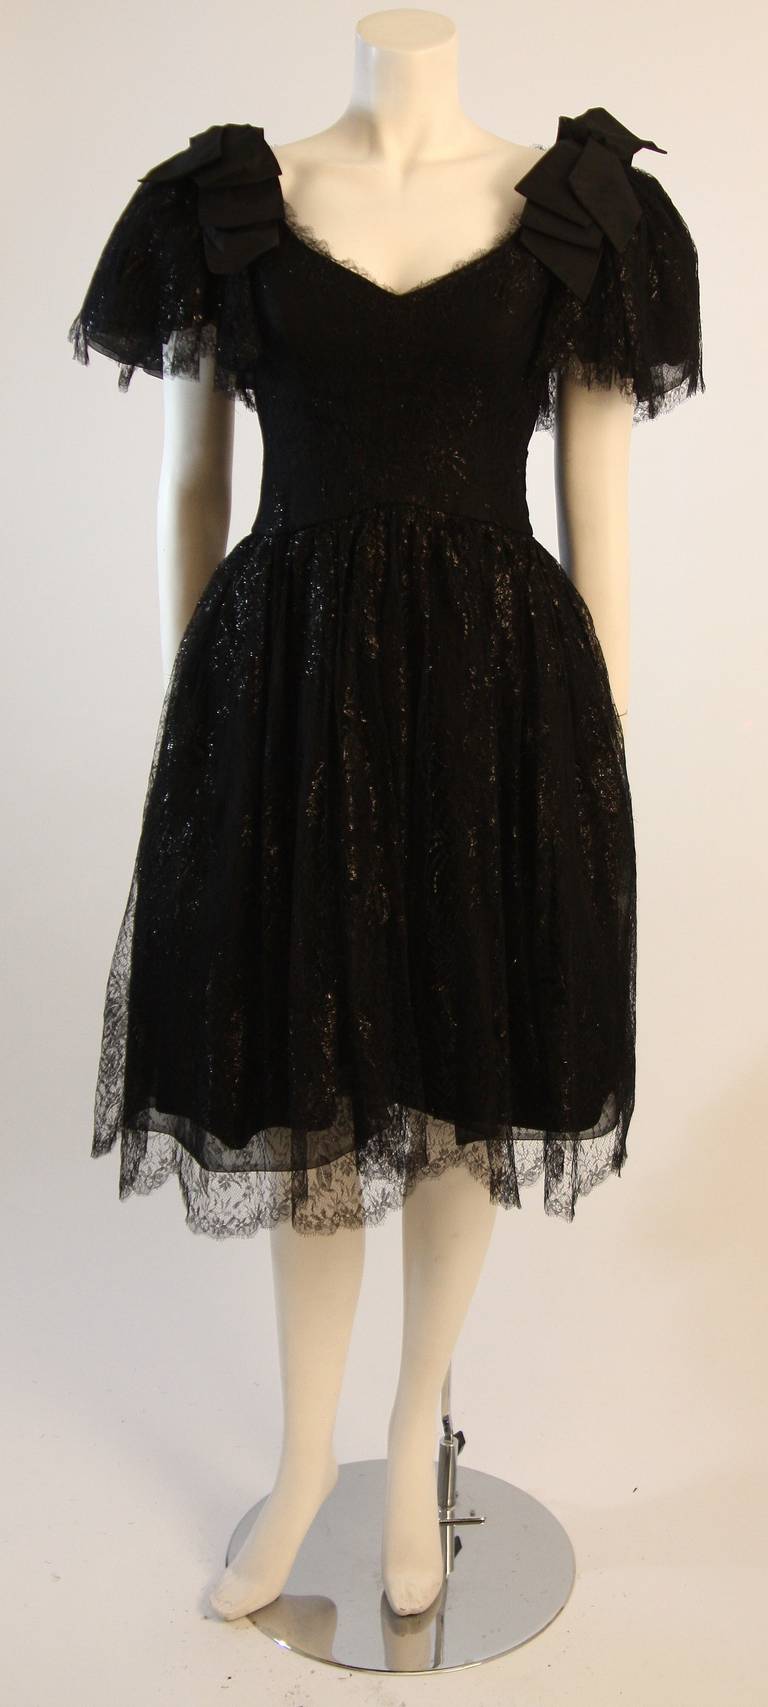 Il s'agit d'une très belle robe de cocktail de Nolan Miller. Cette robe est composée d'une fantastique dentelle souple noire avec un subtil attribut métallique. Elle présente une magnifique ligne de poitrine en V et des manches drapées agrémentées